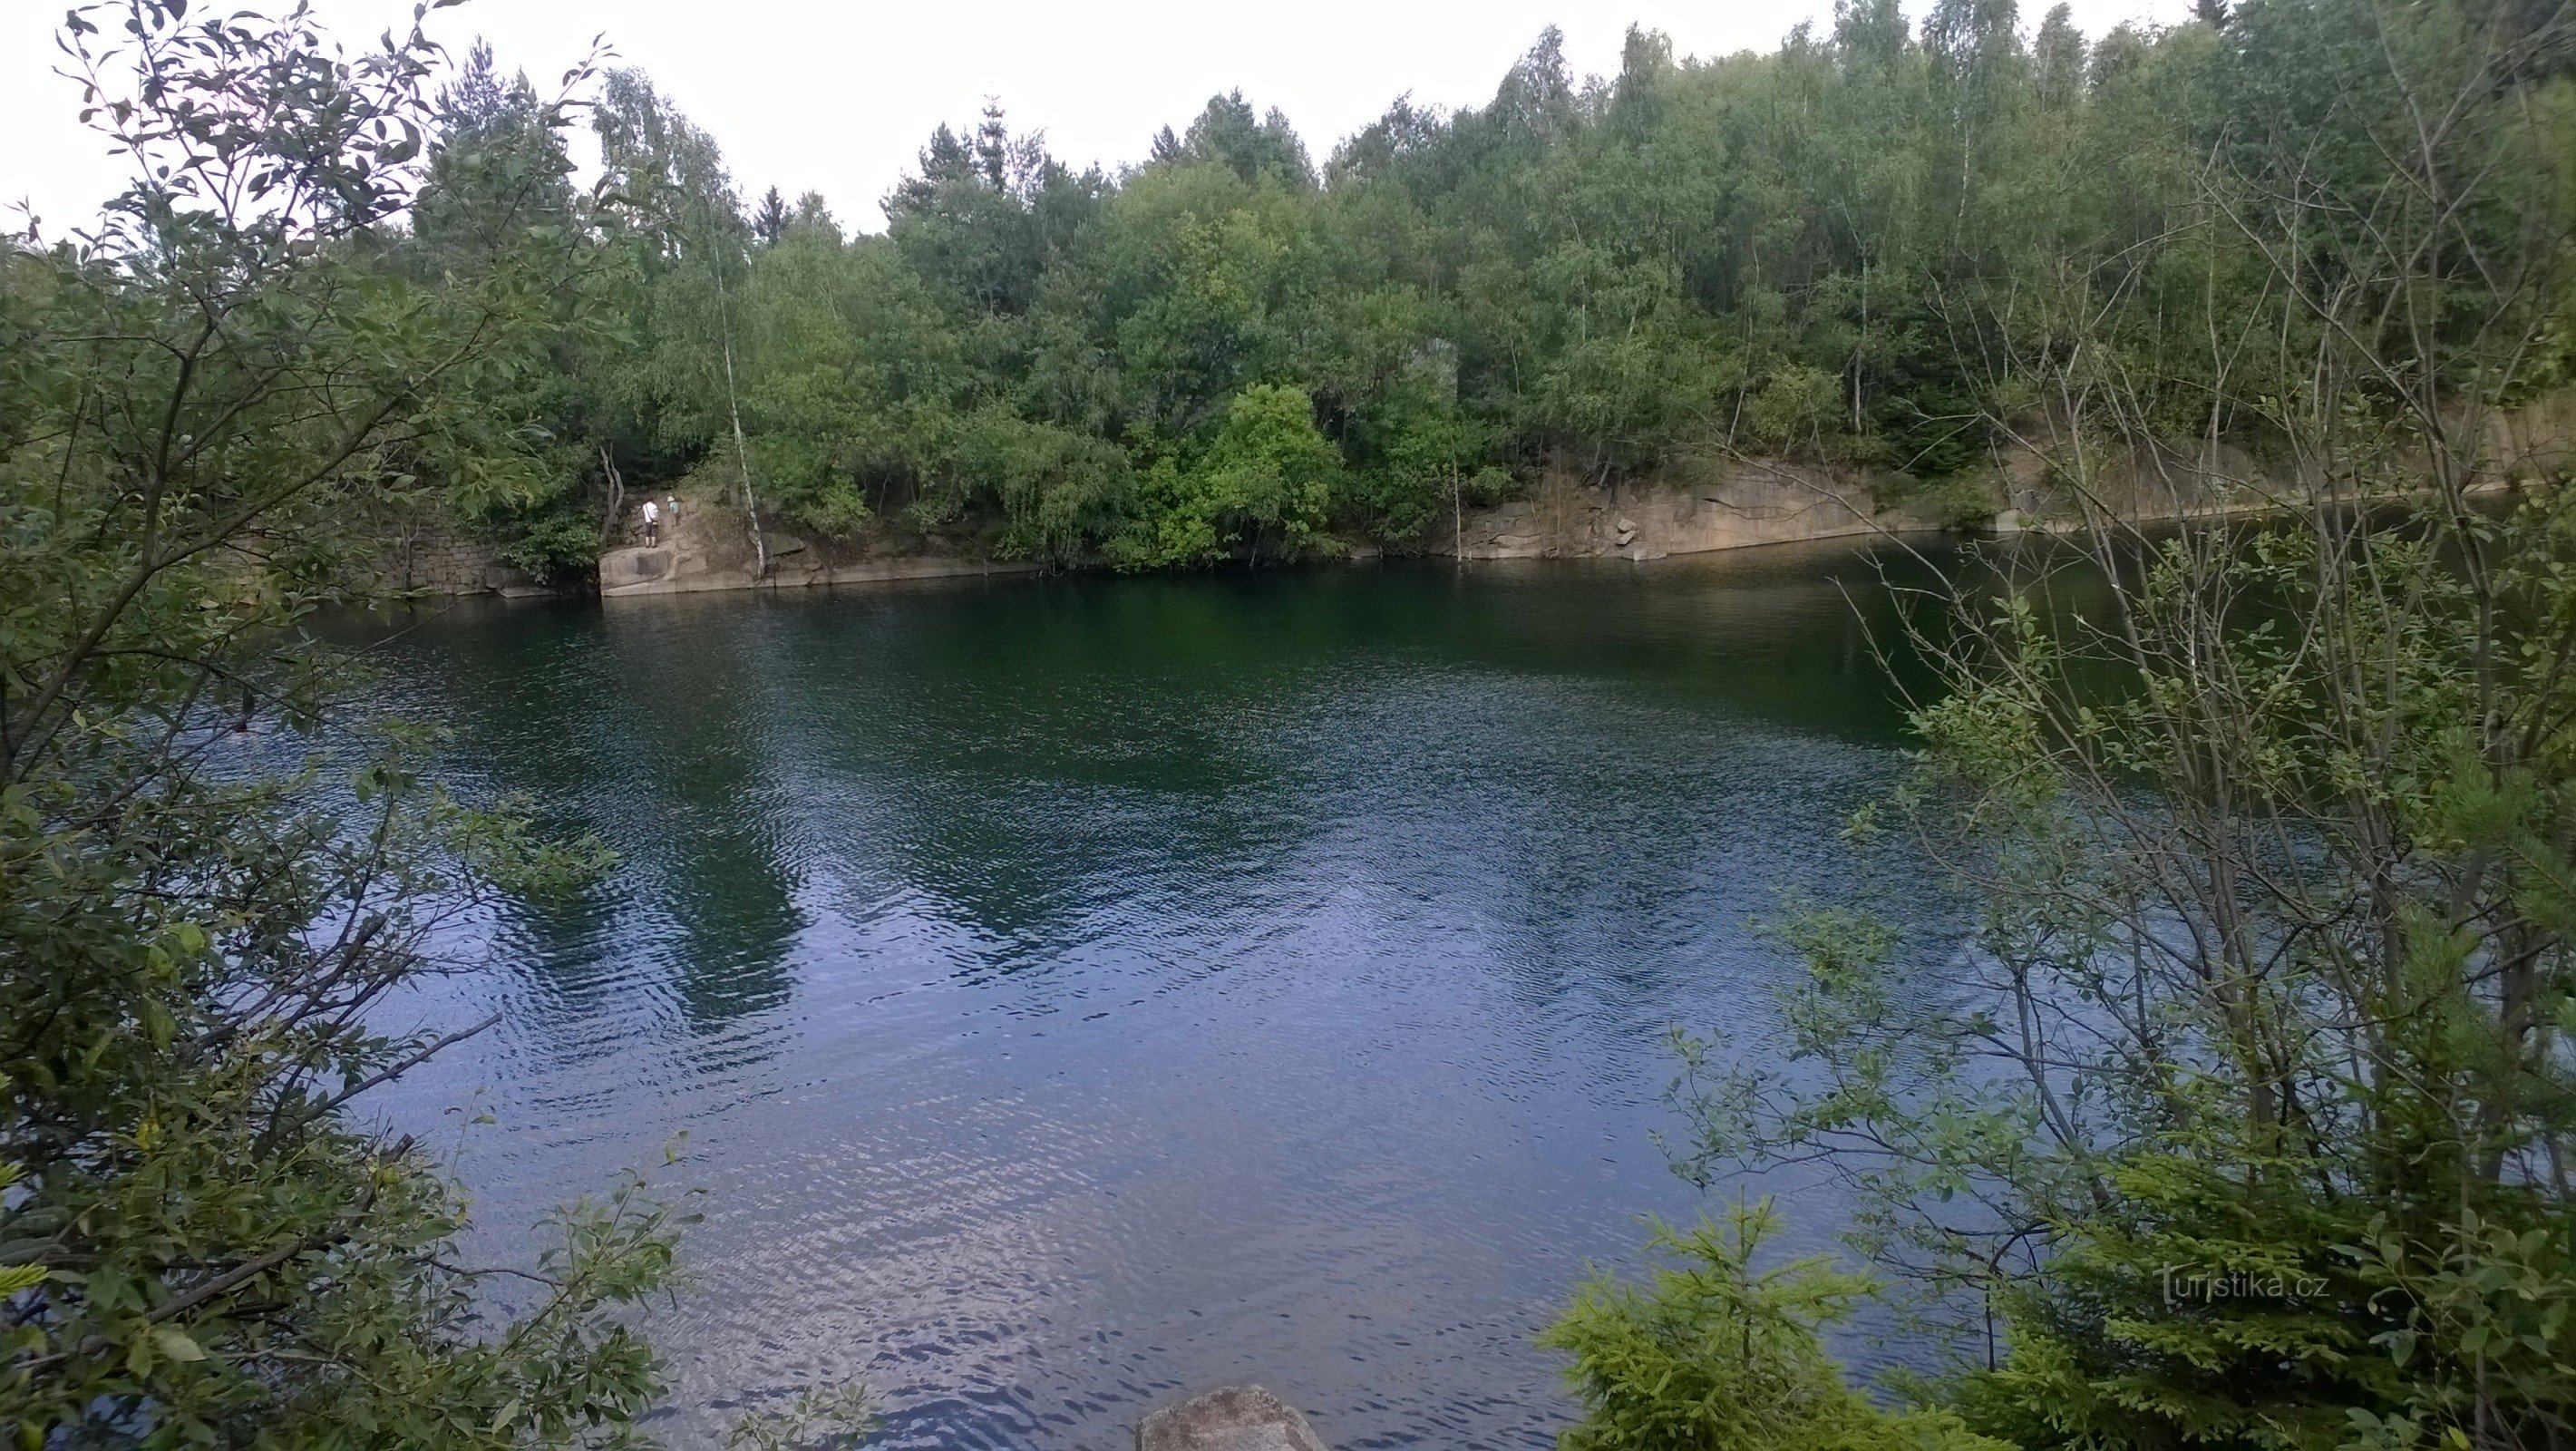 Lipnické lomy - ein schöner Ort zum Sommerbaden.